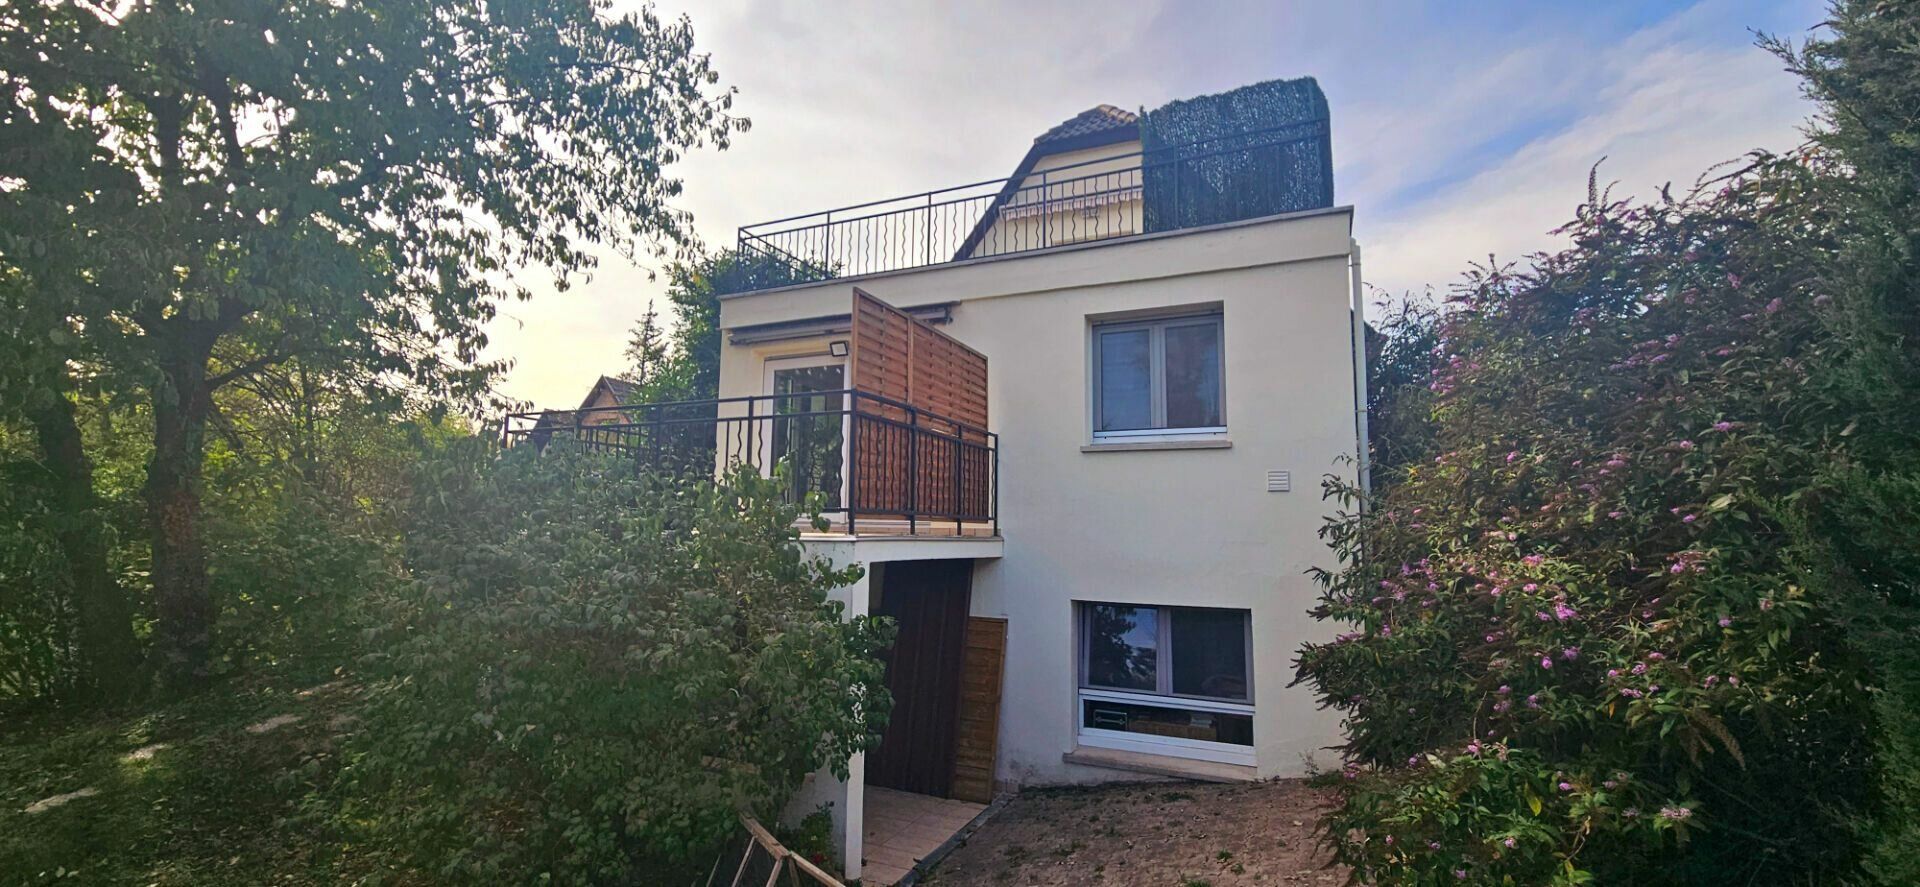 Maison à vendre 6 165m2 à Strasbourg vignette-2